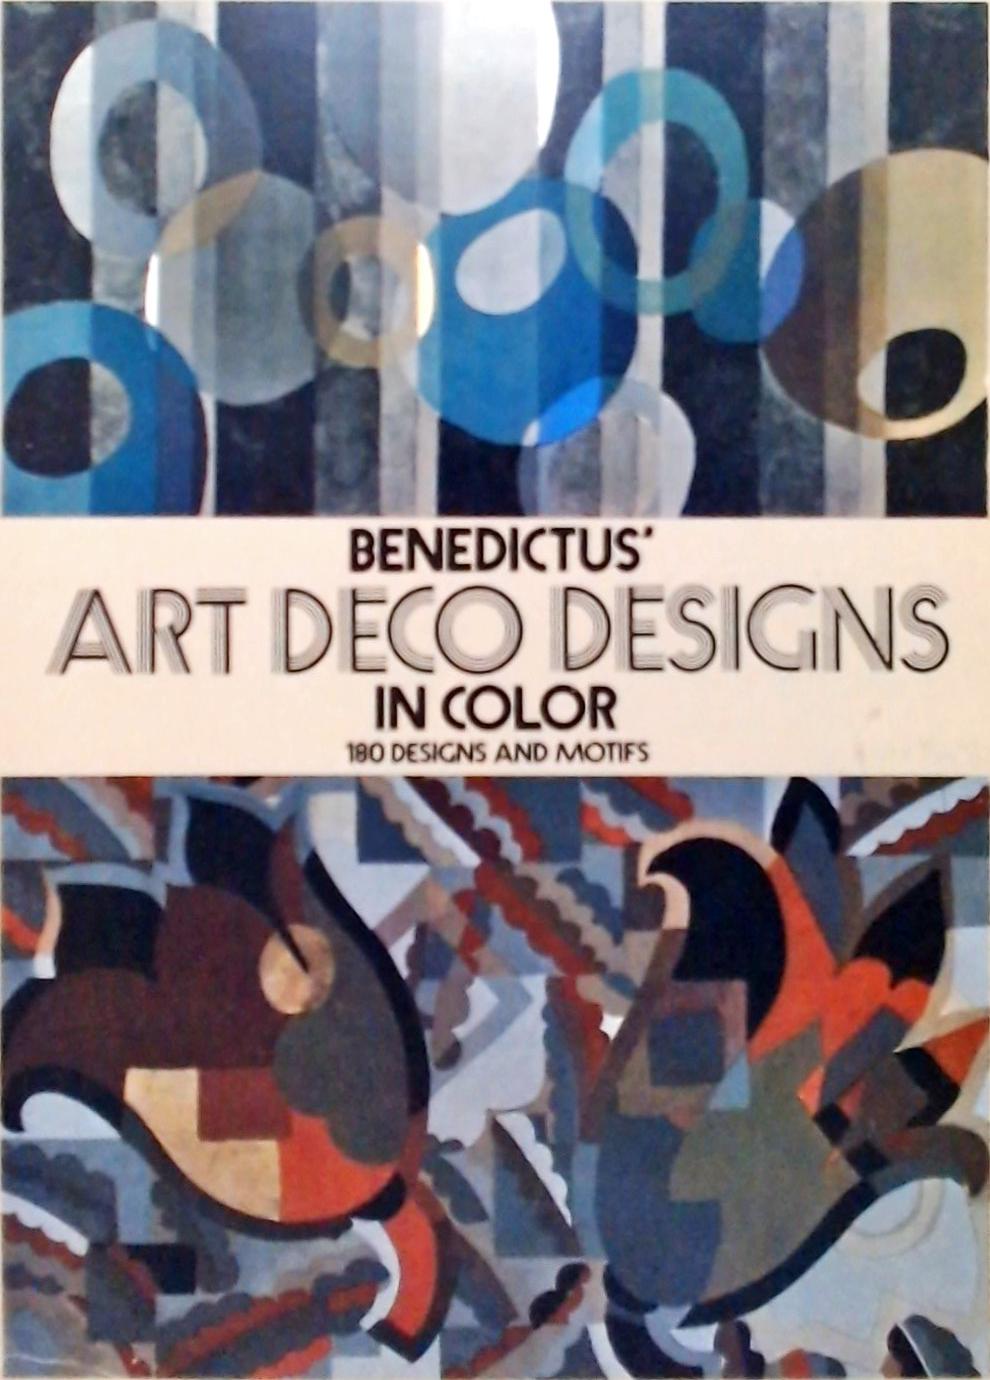 Benedictus Art Deco Designs in Color